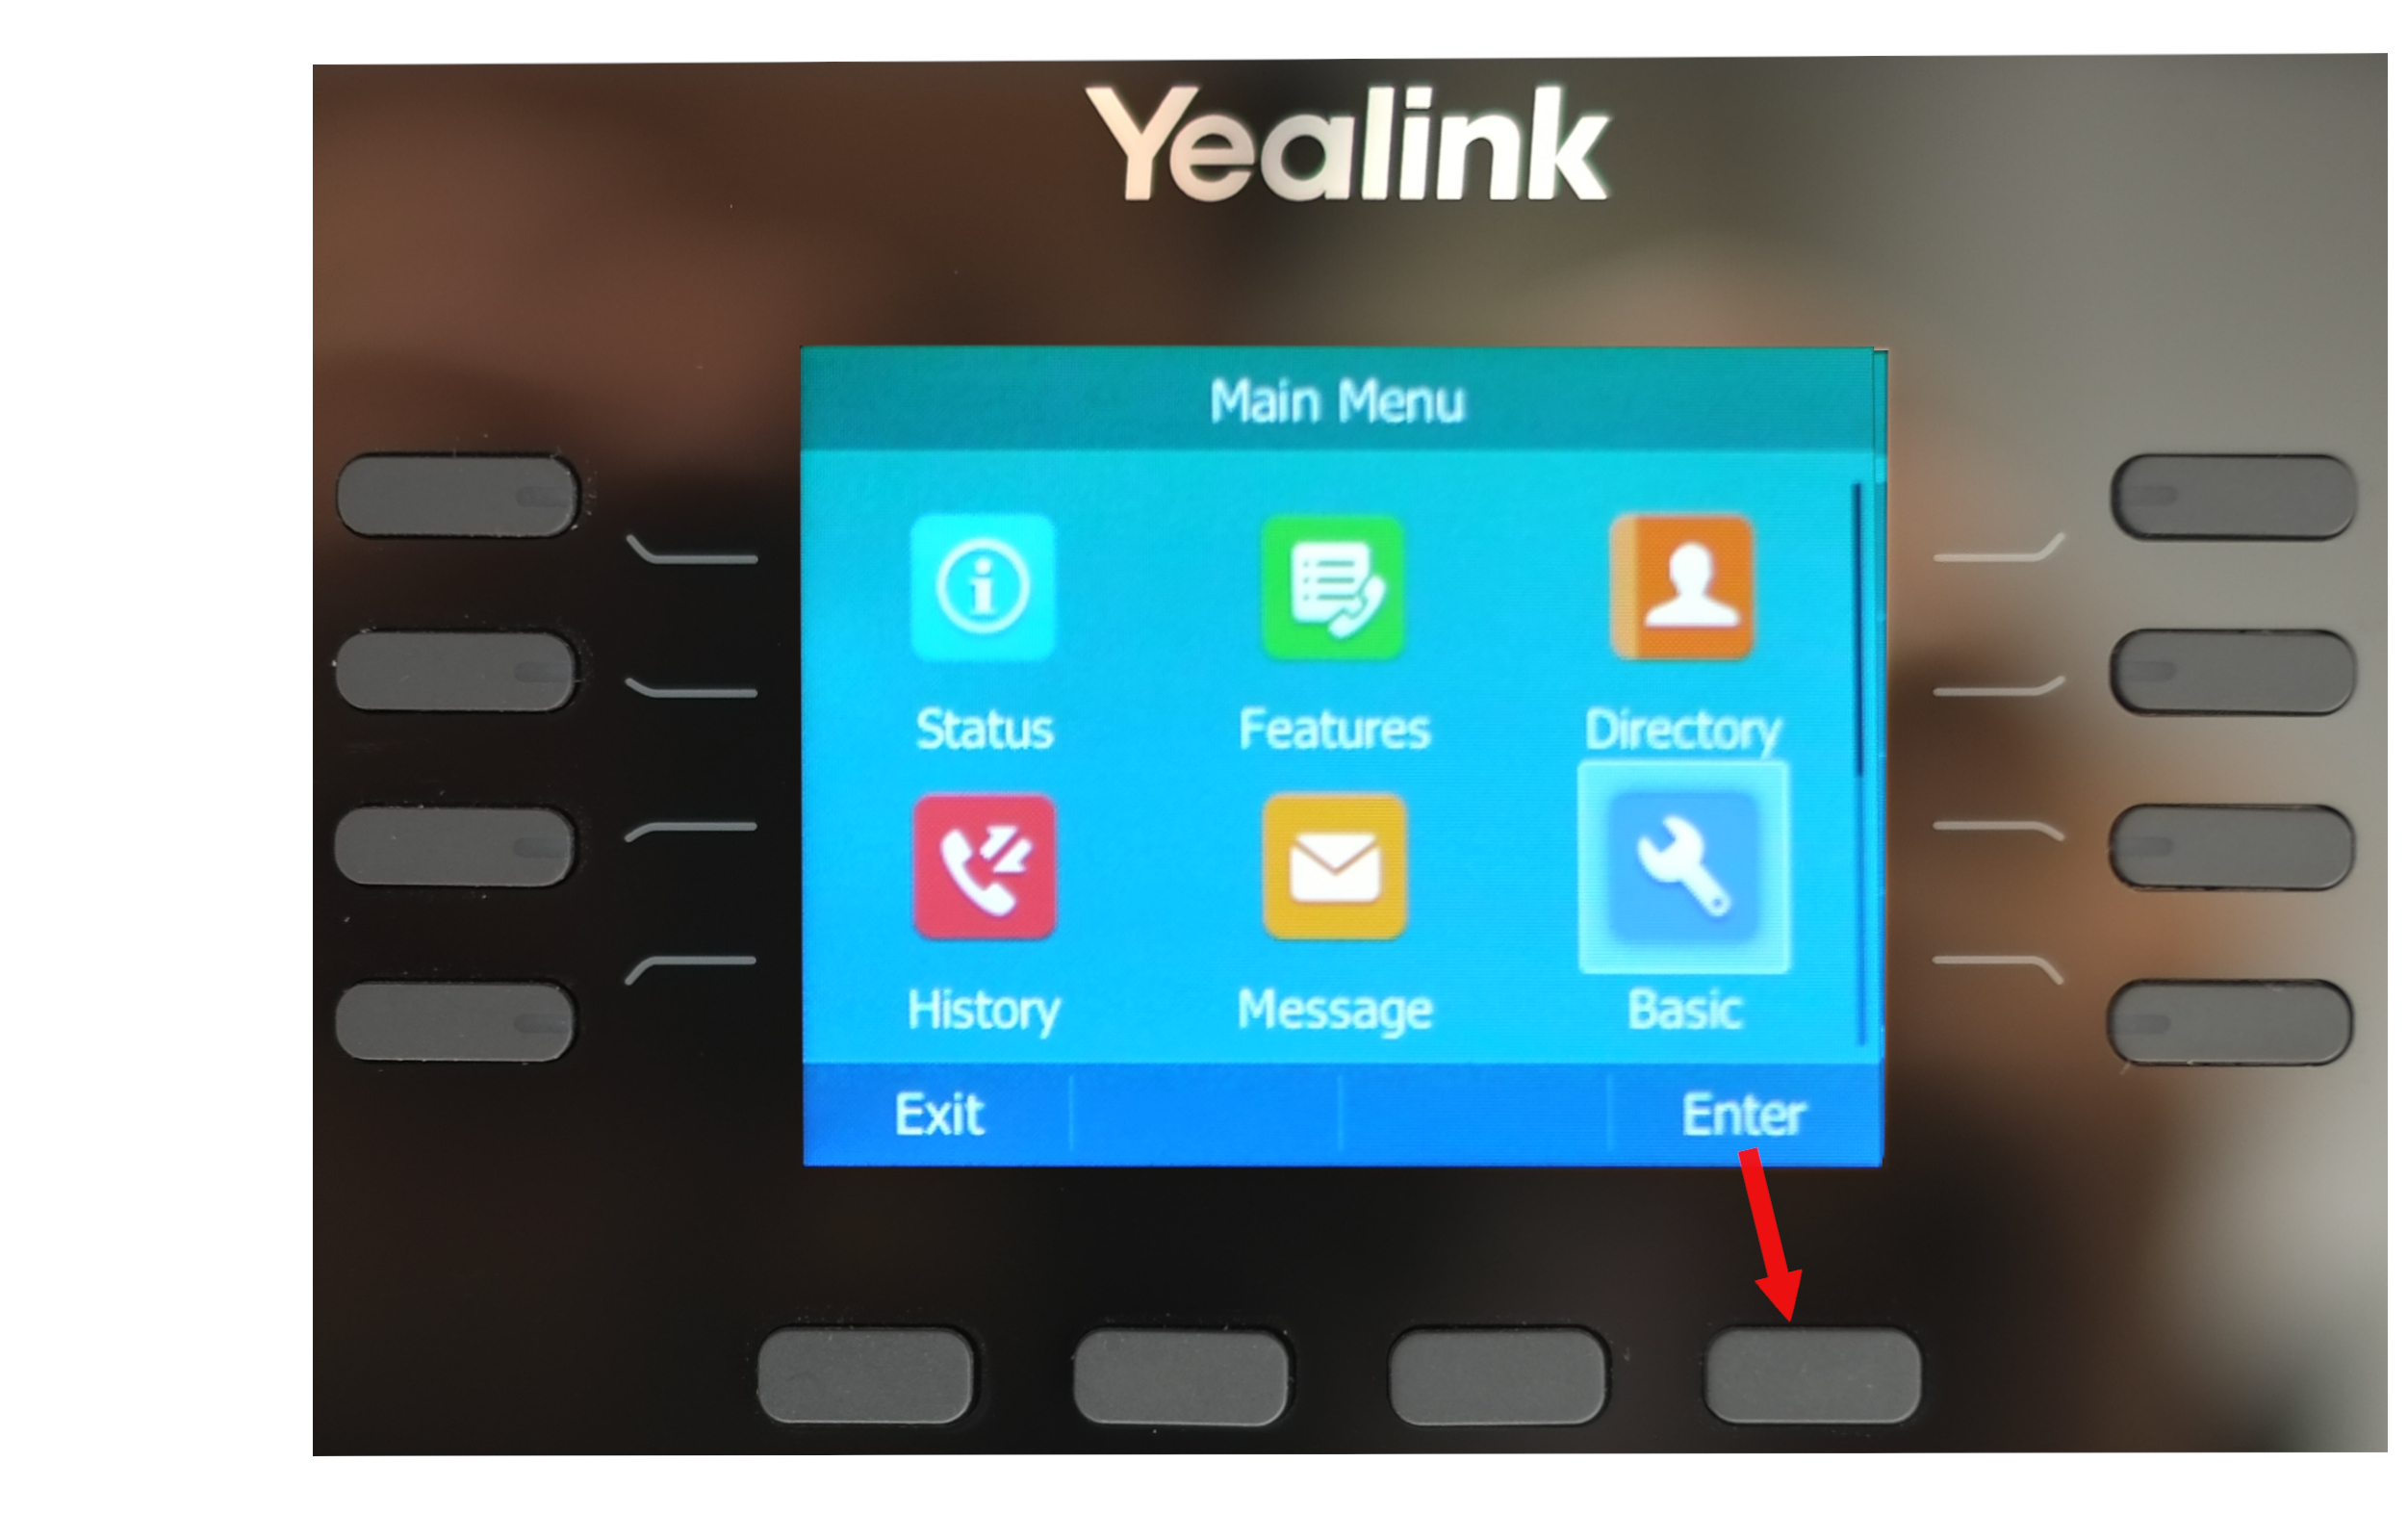 Yealink phone Basic setting icon